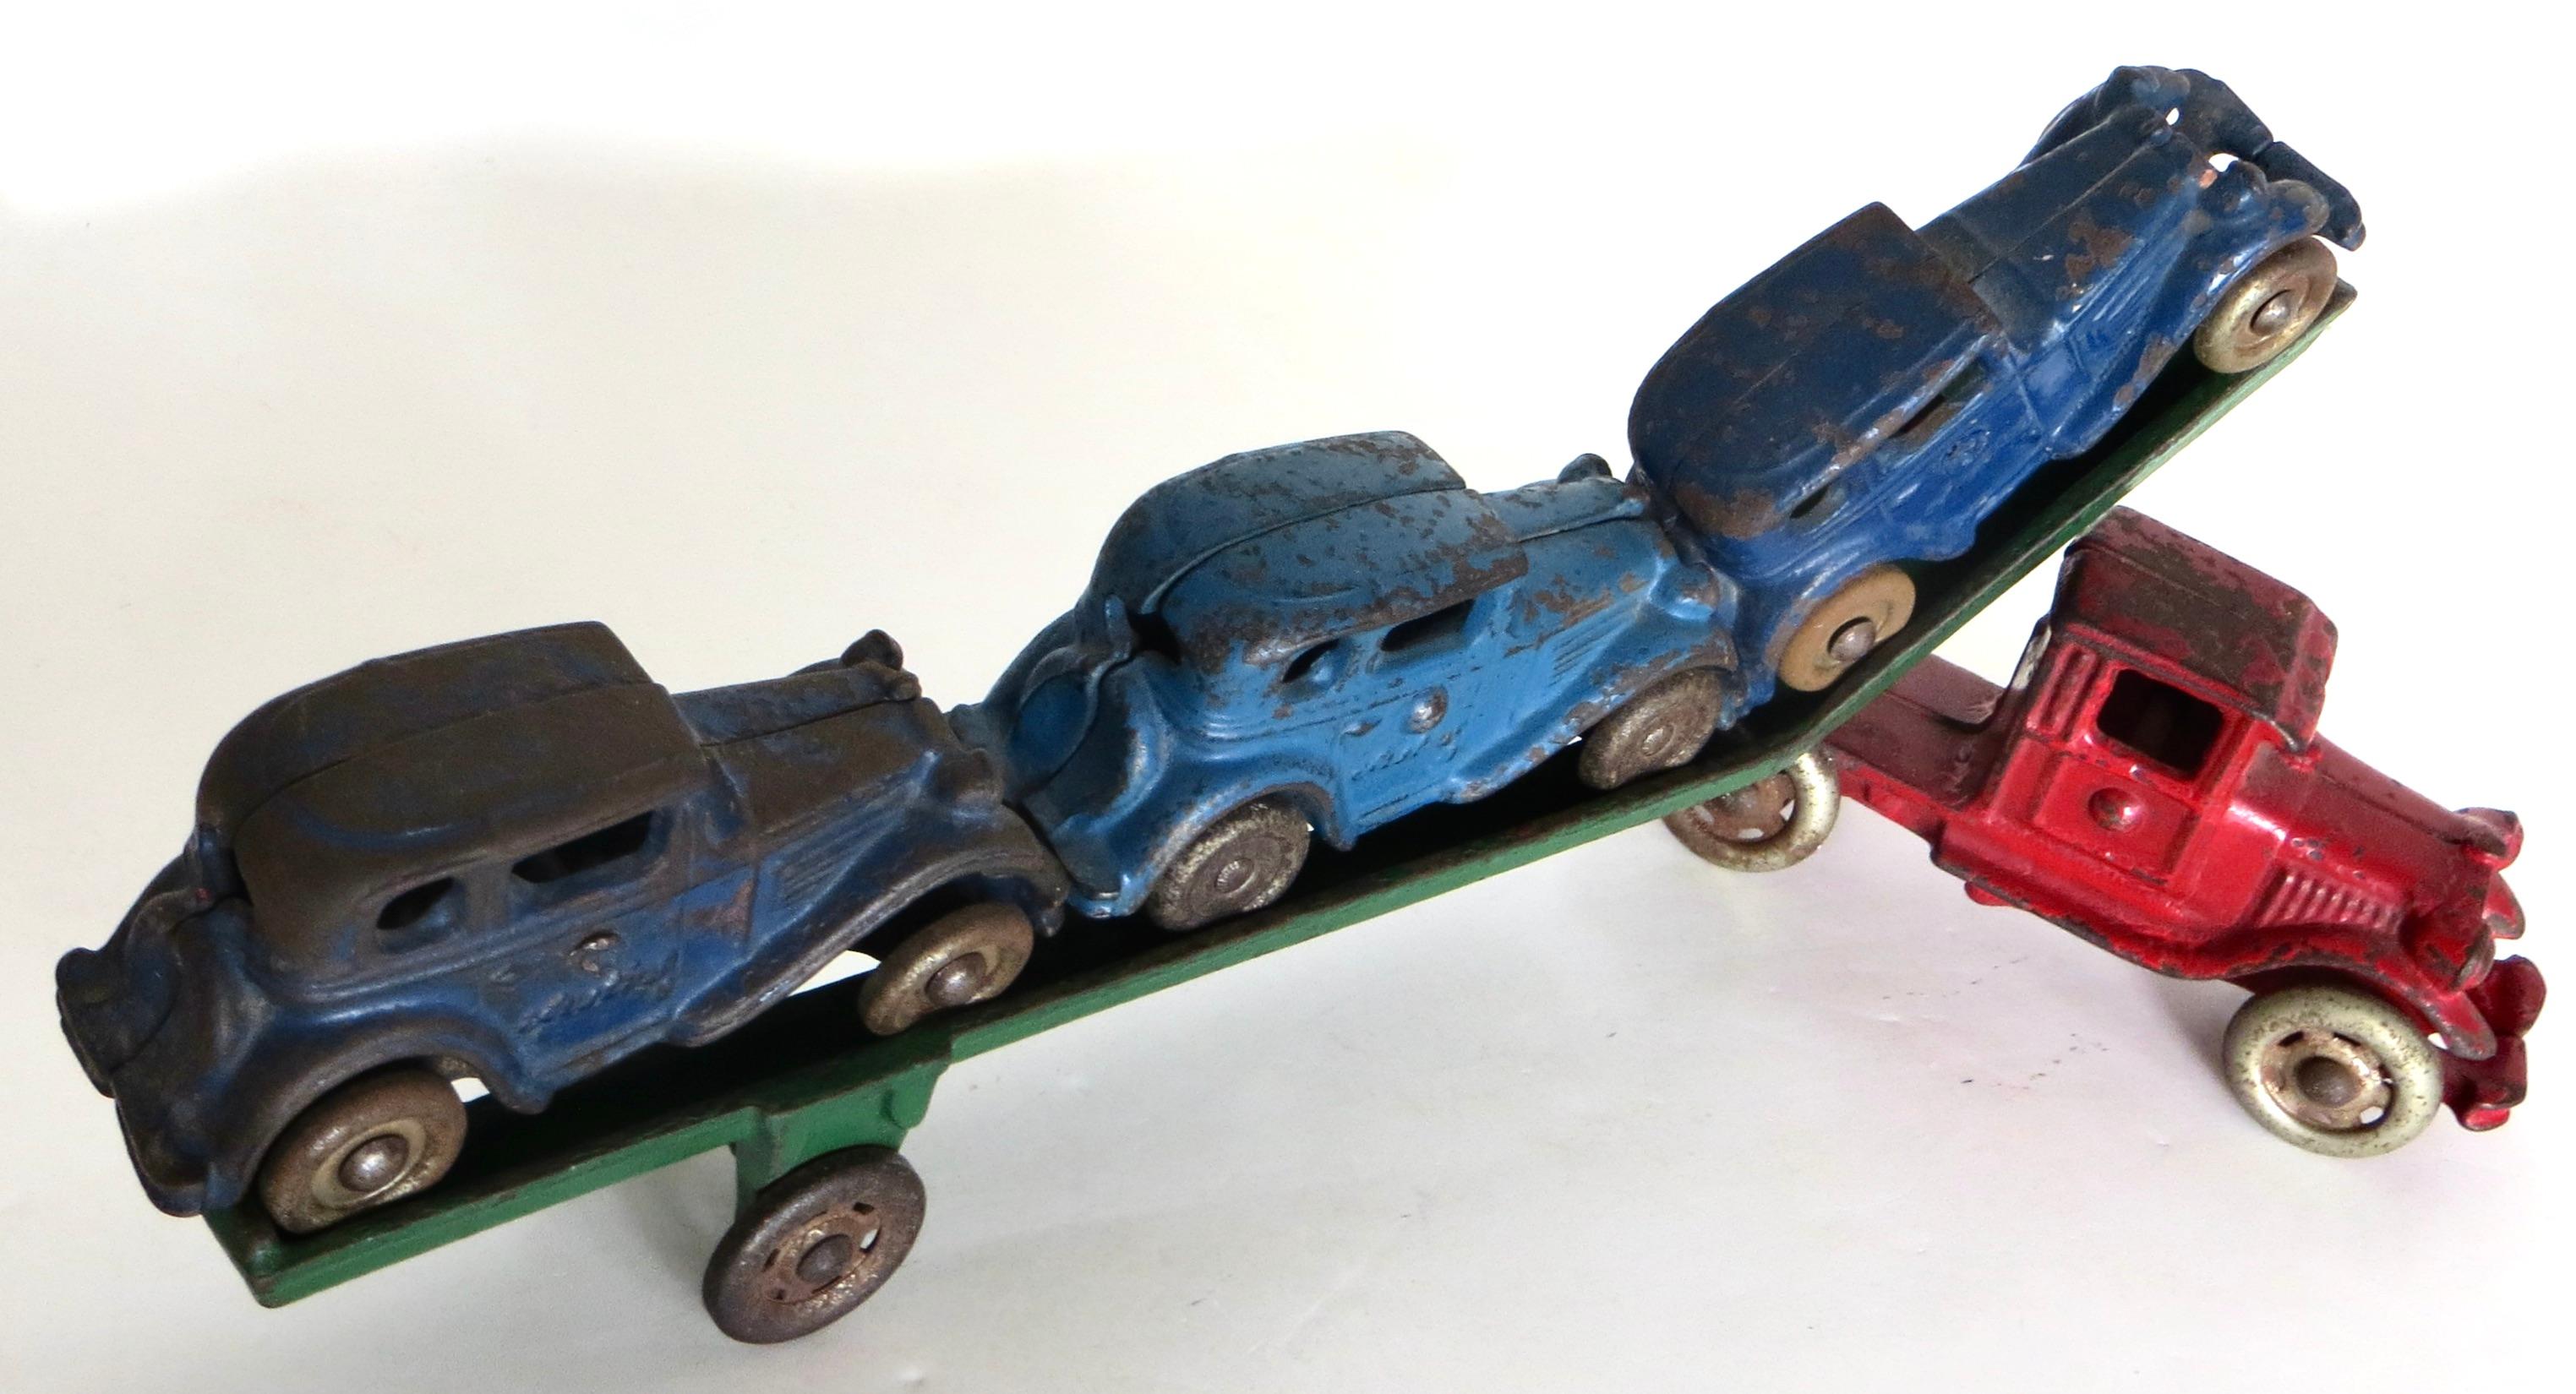 Der A.I.C. wurde 1886 gegründet. Die Williams Toy Company in Ravenna, Ohio, stellte dieses Spielzeug um 1930 her. Dieser gusseiserne Autotransporter mit drei blauen 